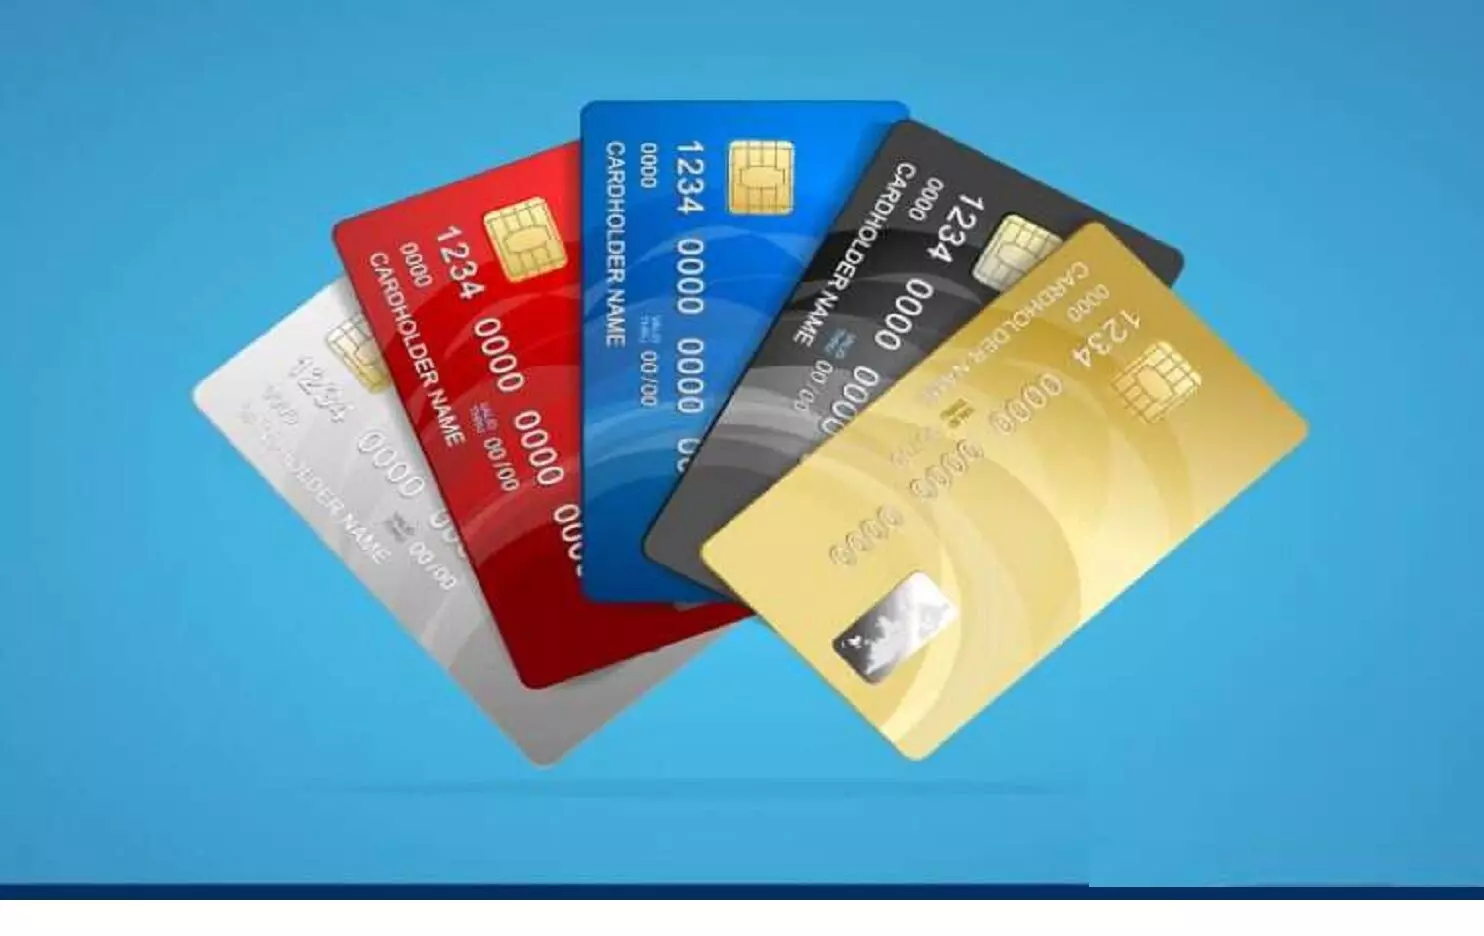 Credit Card News: क्रेडिट कार्ड में एक SMS से लुट जाएगा अकाउंट का सारा पैसा